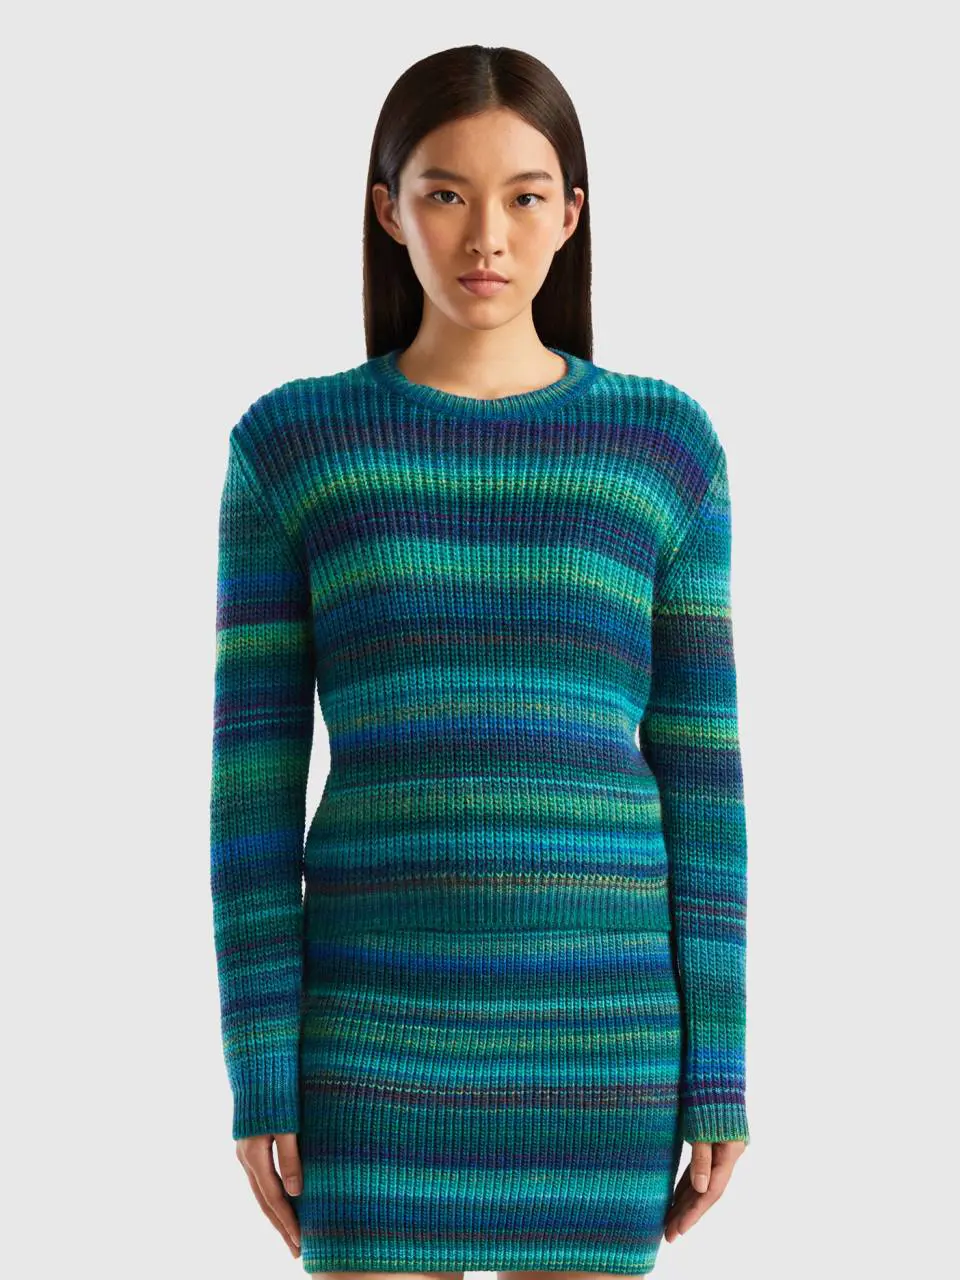 Benetton multicolor striped sweater. 1